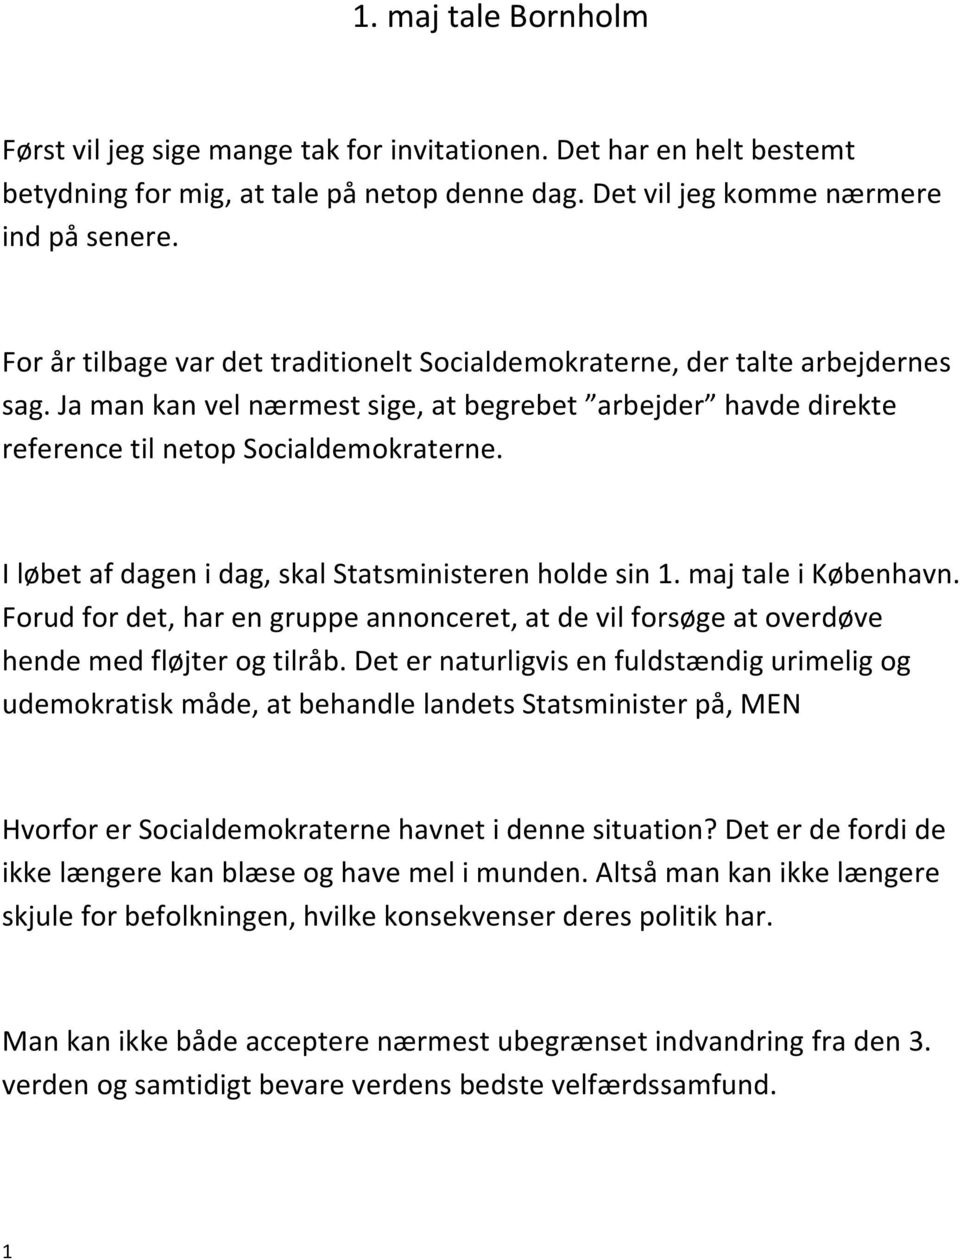 1. maj tale Bornholm - PDF Free Download